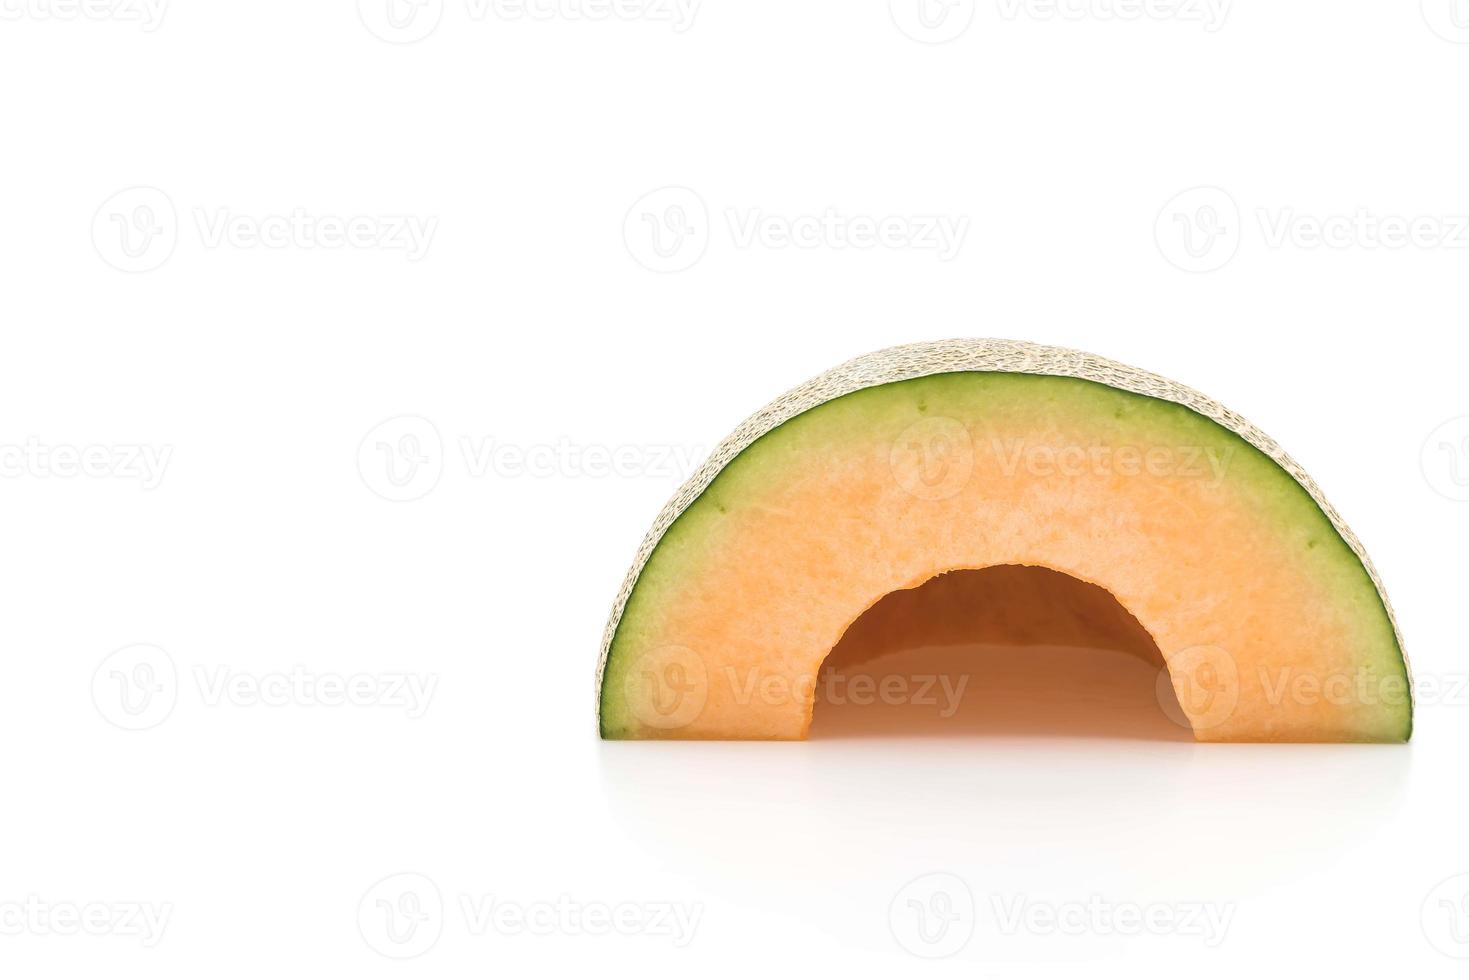 Cantaloupe melon on white background photo